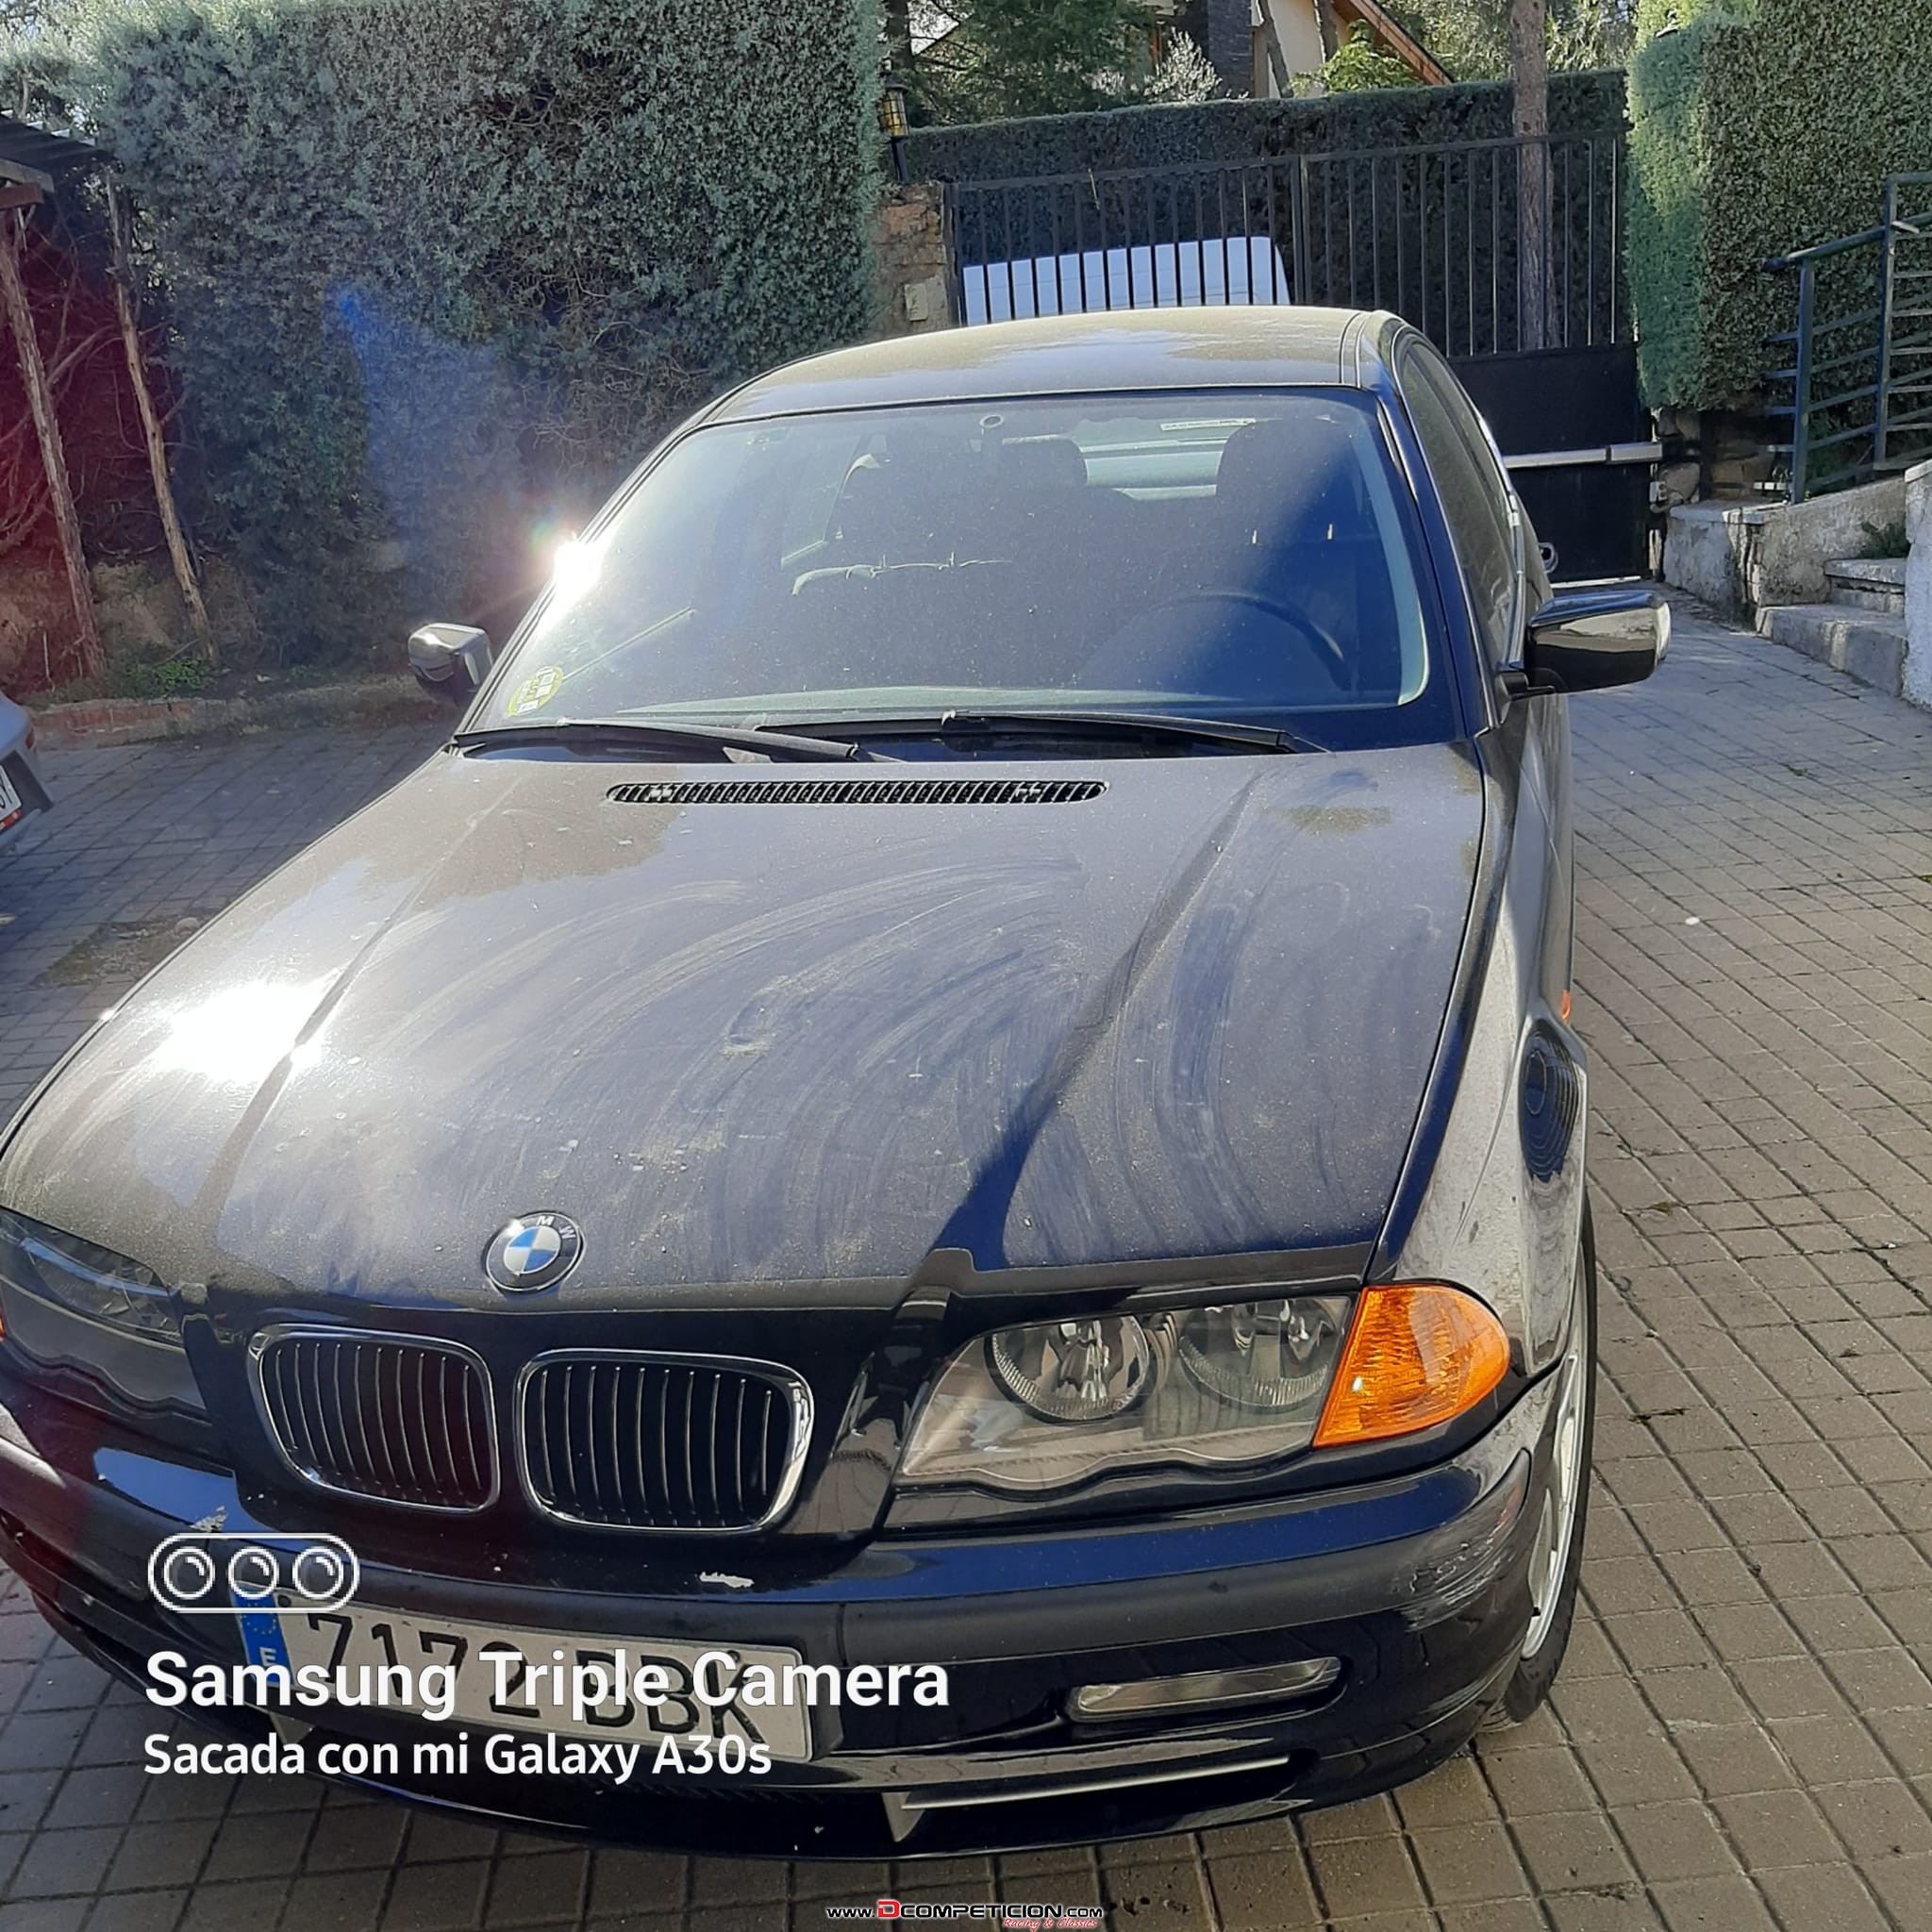 Foto3 BMW 330 xi, gasolina, 231 cv, traccion 4 ruedas, menos 120 km., asientos cuero.